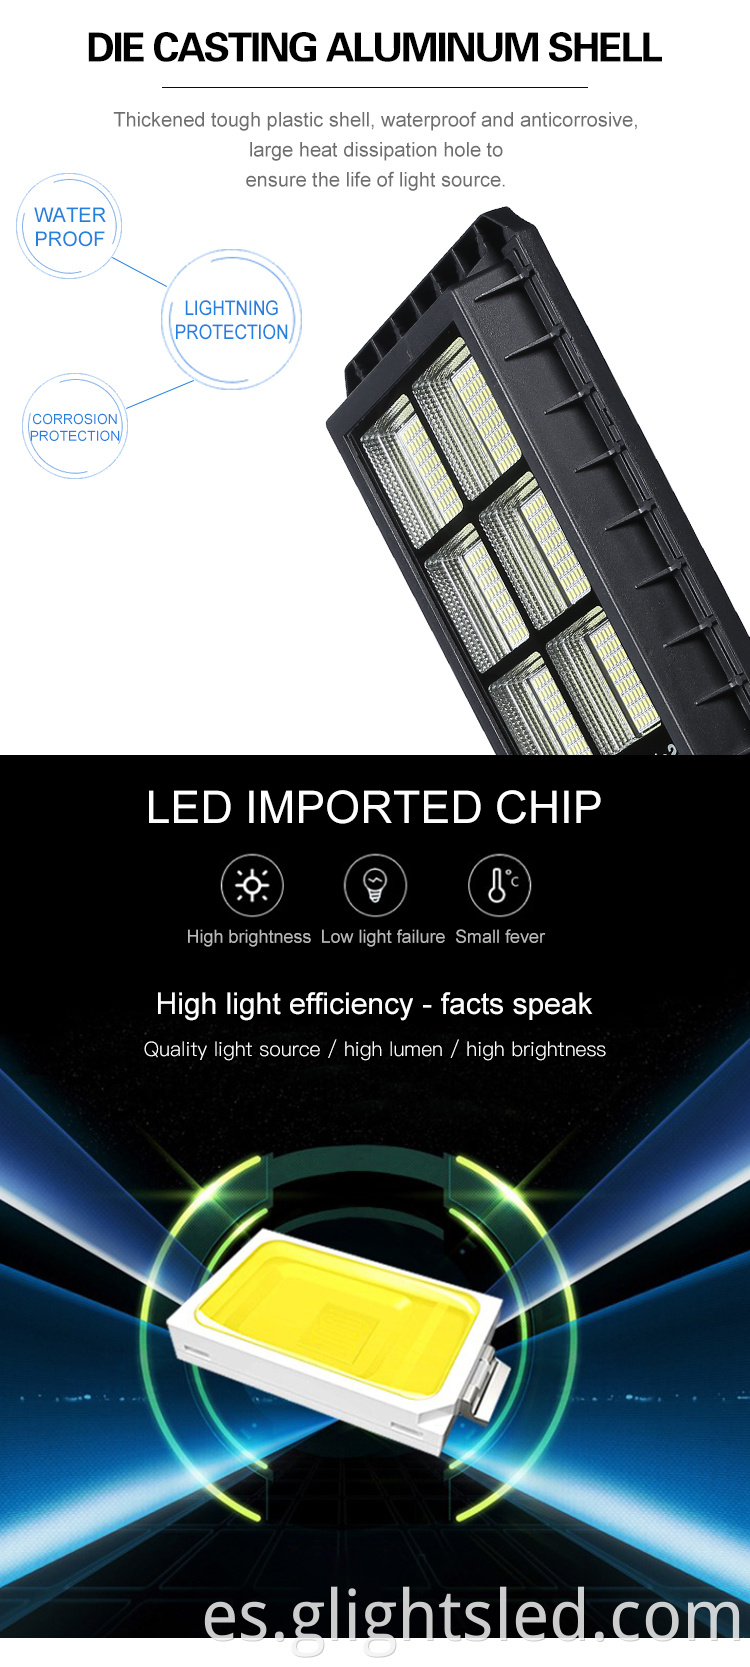 Nuevos productos sensor de movimiento 60120180 vatios SMD integrado todo en una farola led solar